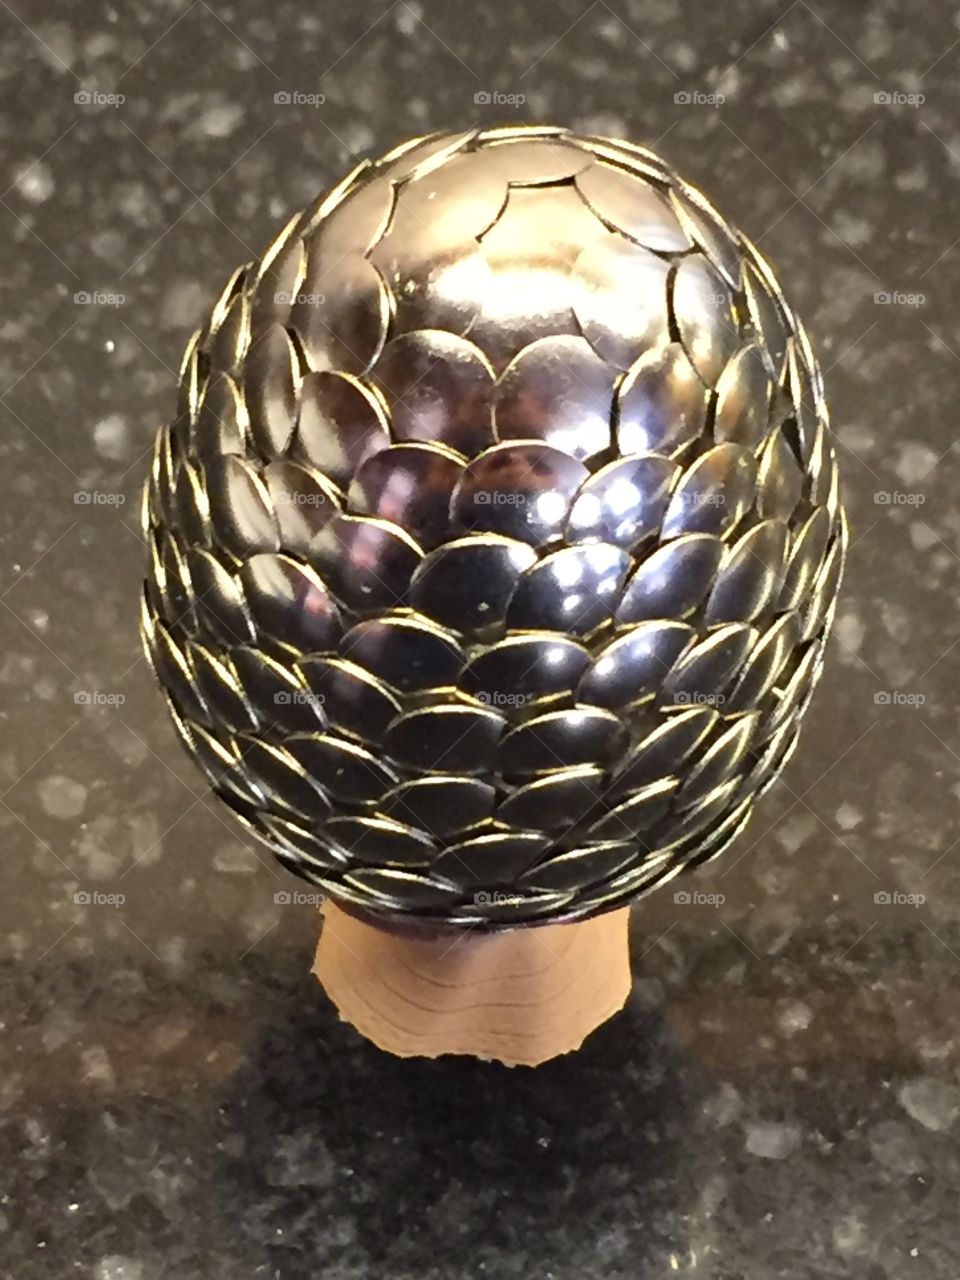 Silver Dragon egg